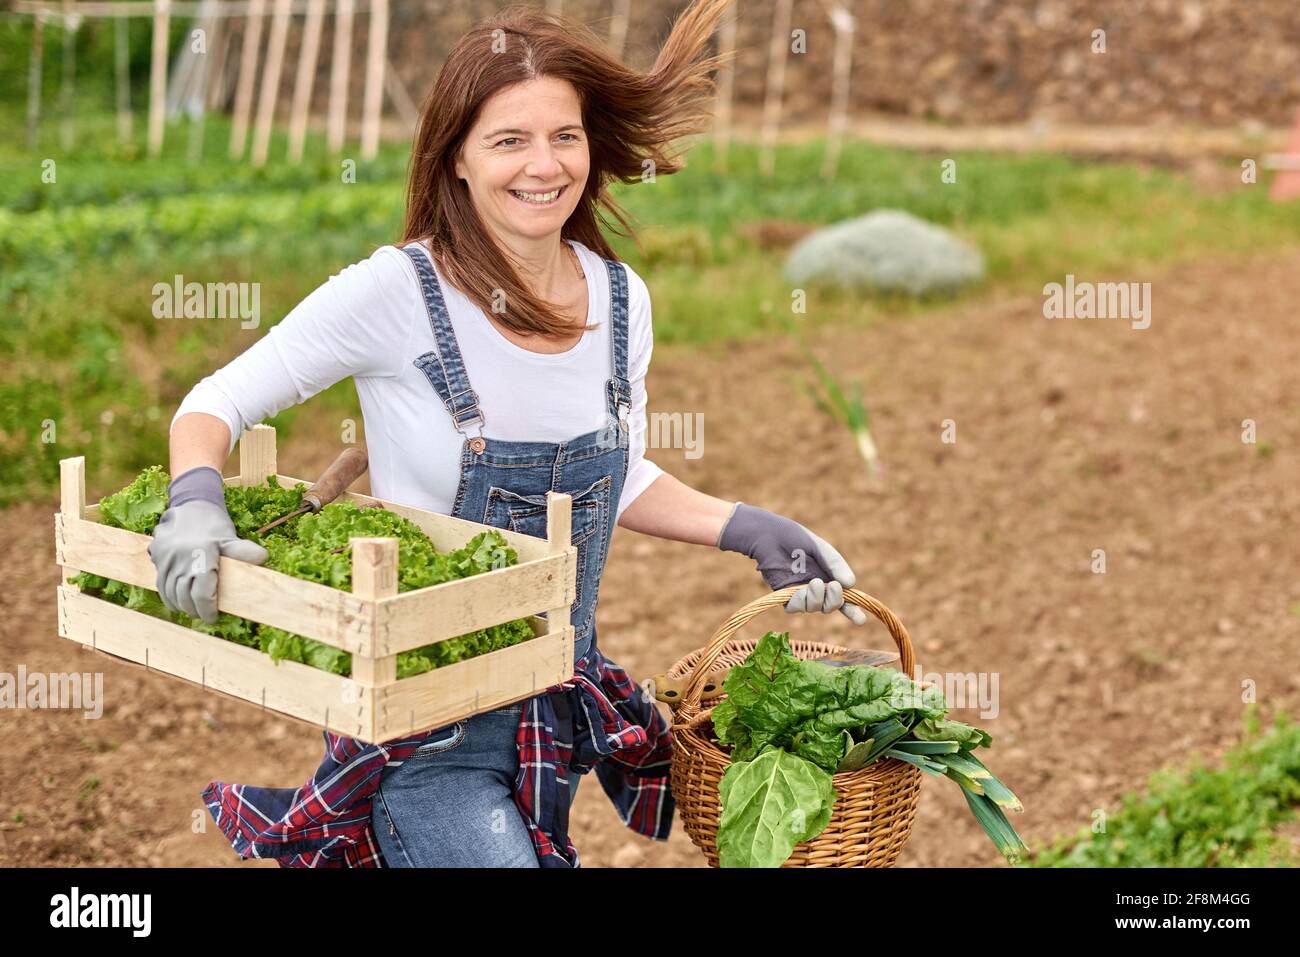 Bonne femme paysanne caucasienne adulte travaillant dans son jardin à la maison Cueillette de laitue biologique - mode de vie de la ferme et nourriture saine Concept - Focus sur le visage Banque D'Images